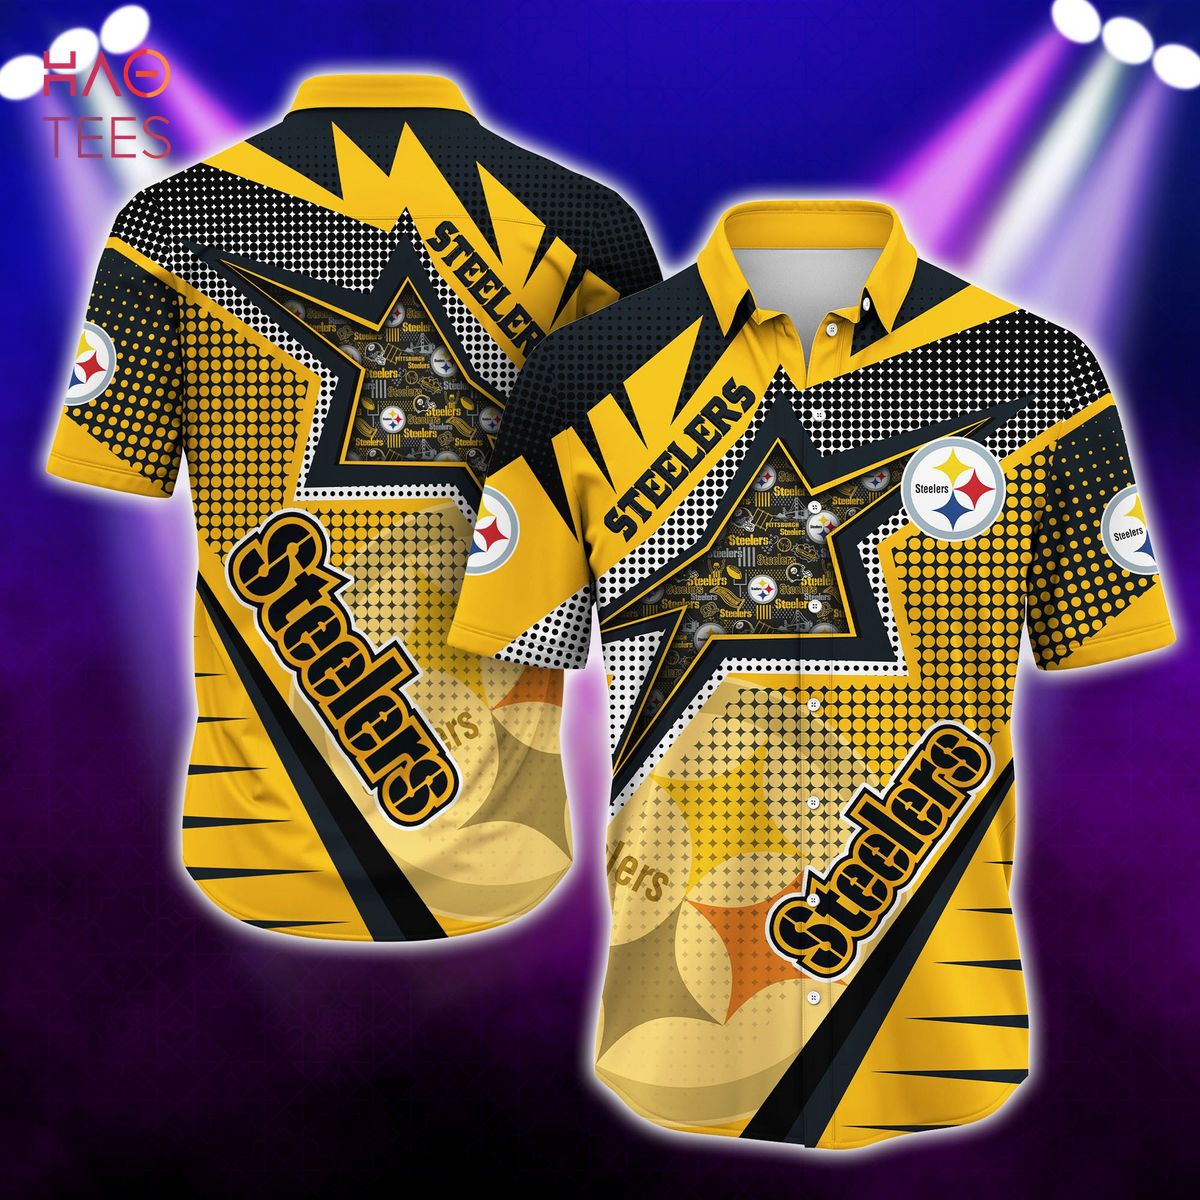 NEW Pittsburgh Steelers NFL Hawaiian Shirt